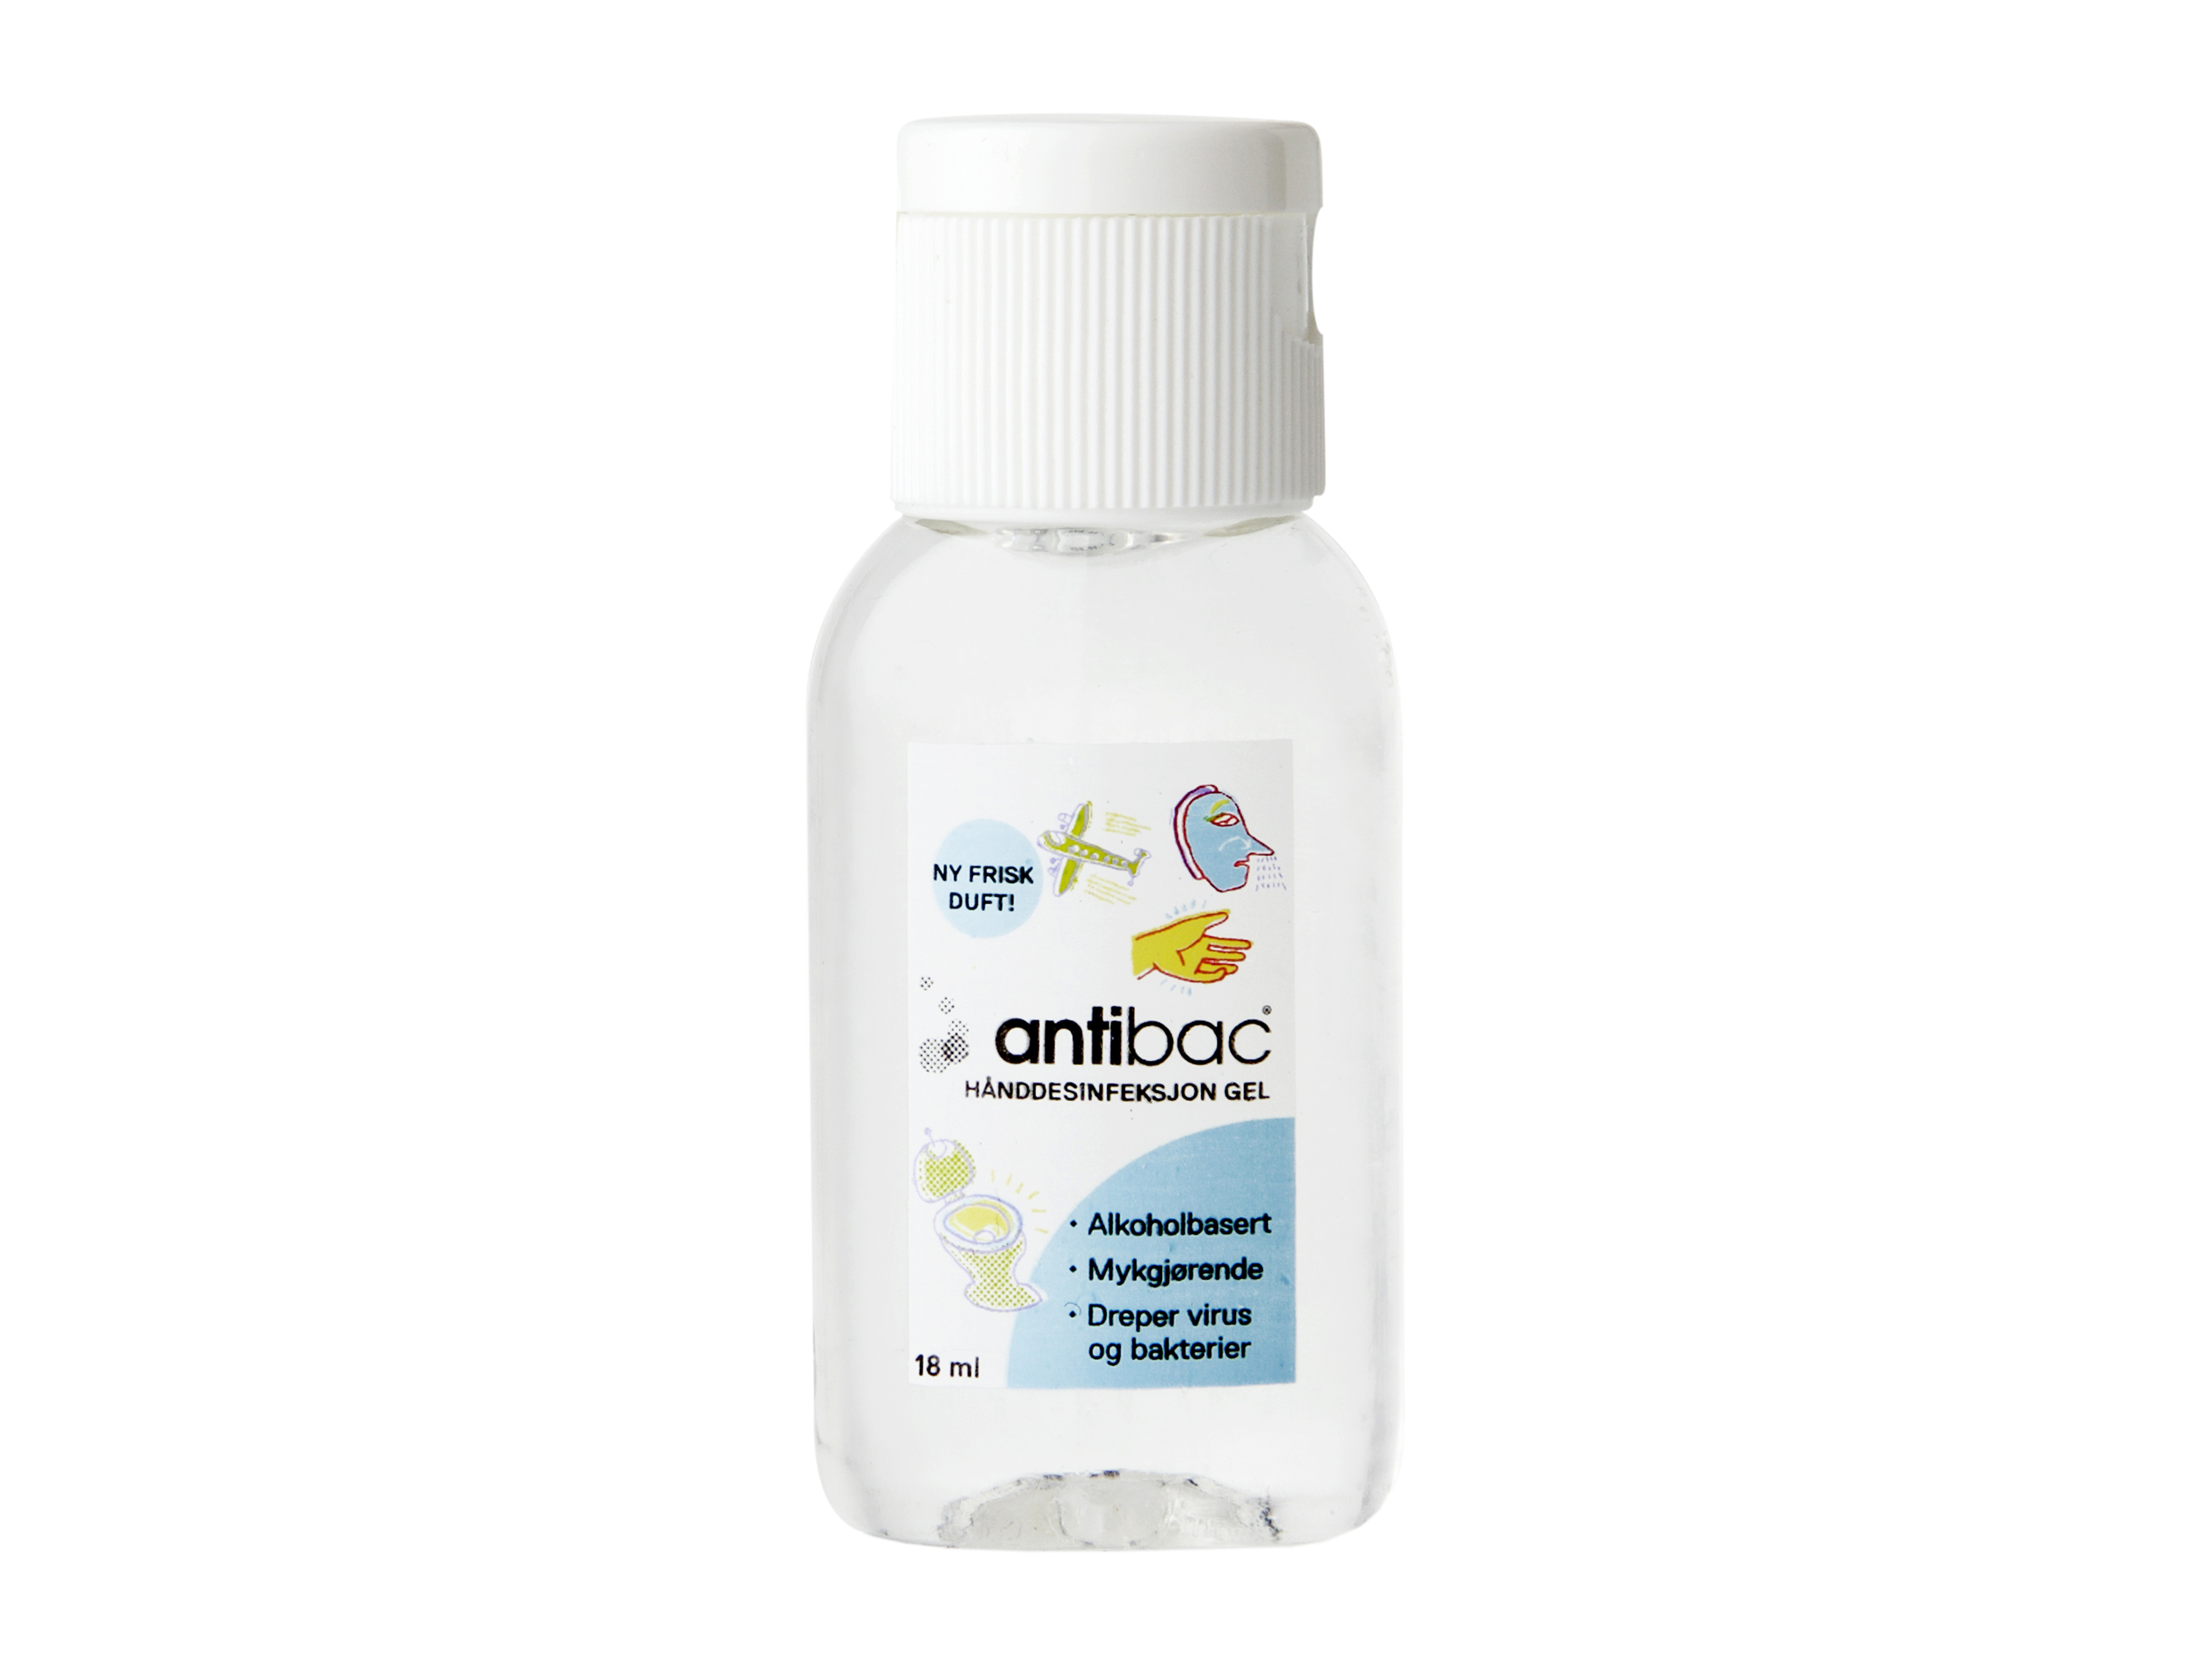 Antibac Hånddesinfeksjons gel 75%, 18 ml